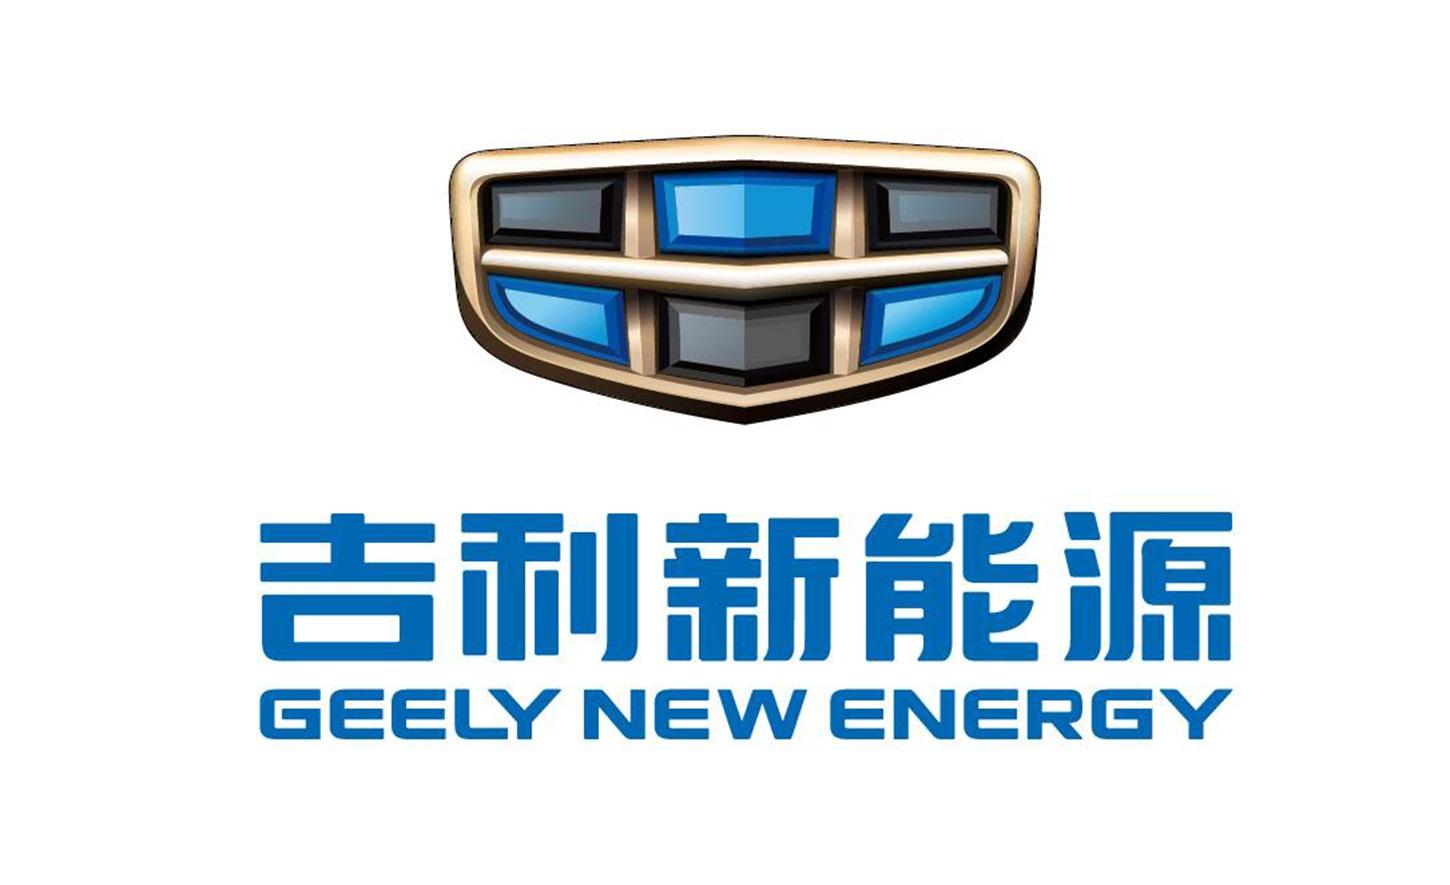 商标文字吉利新能源 geely new energy商标注册号 21075105,商标申请